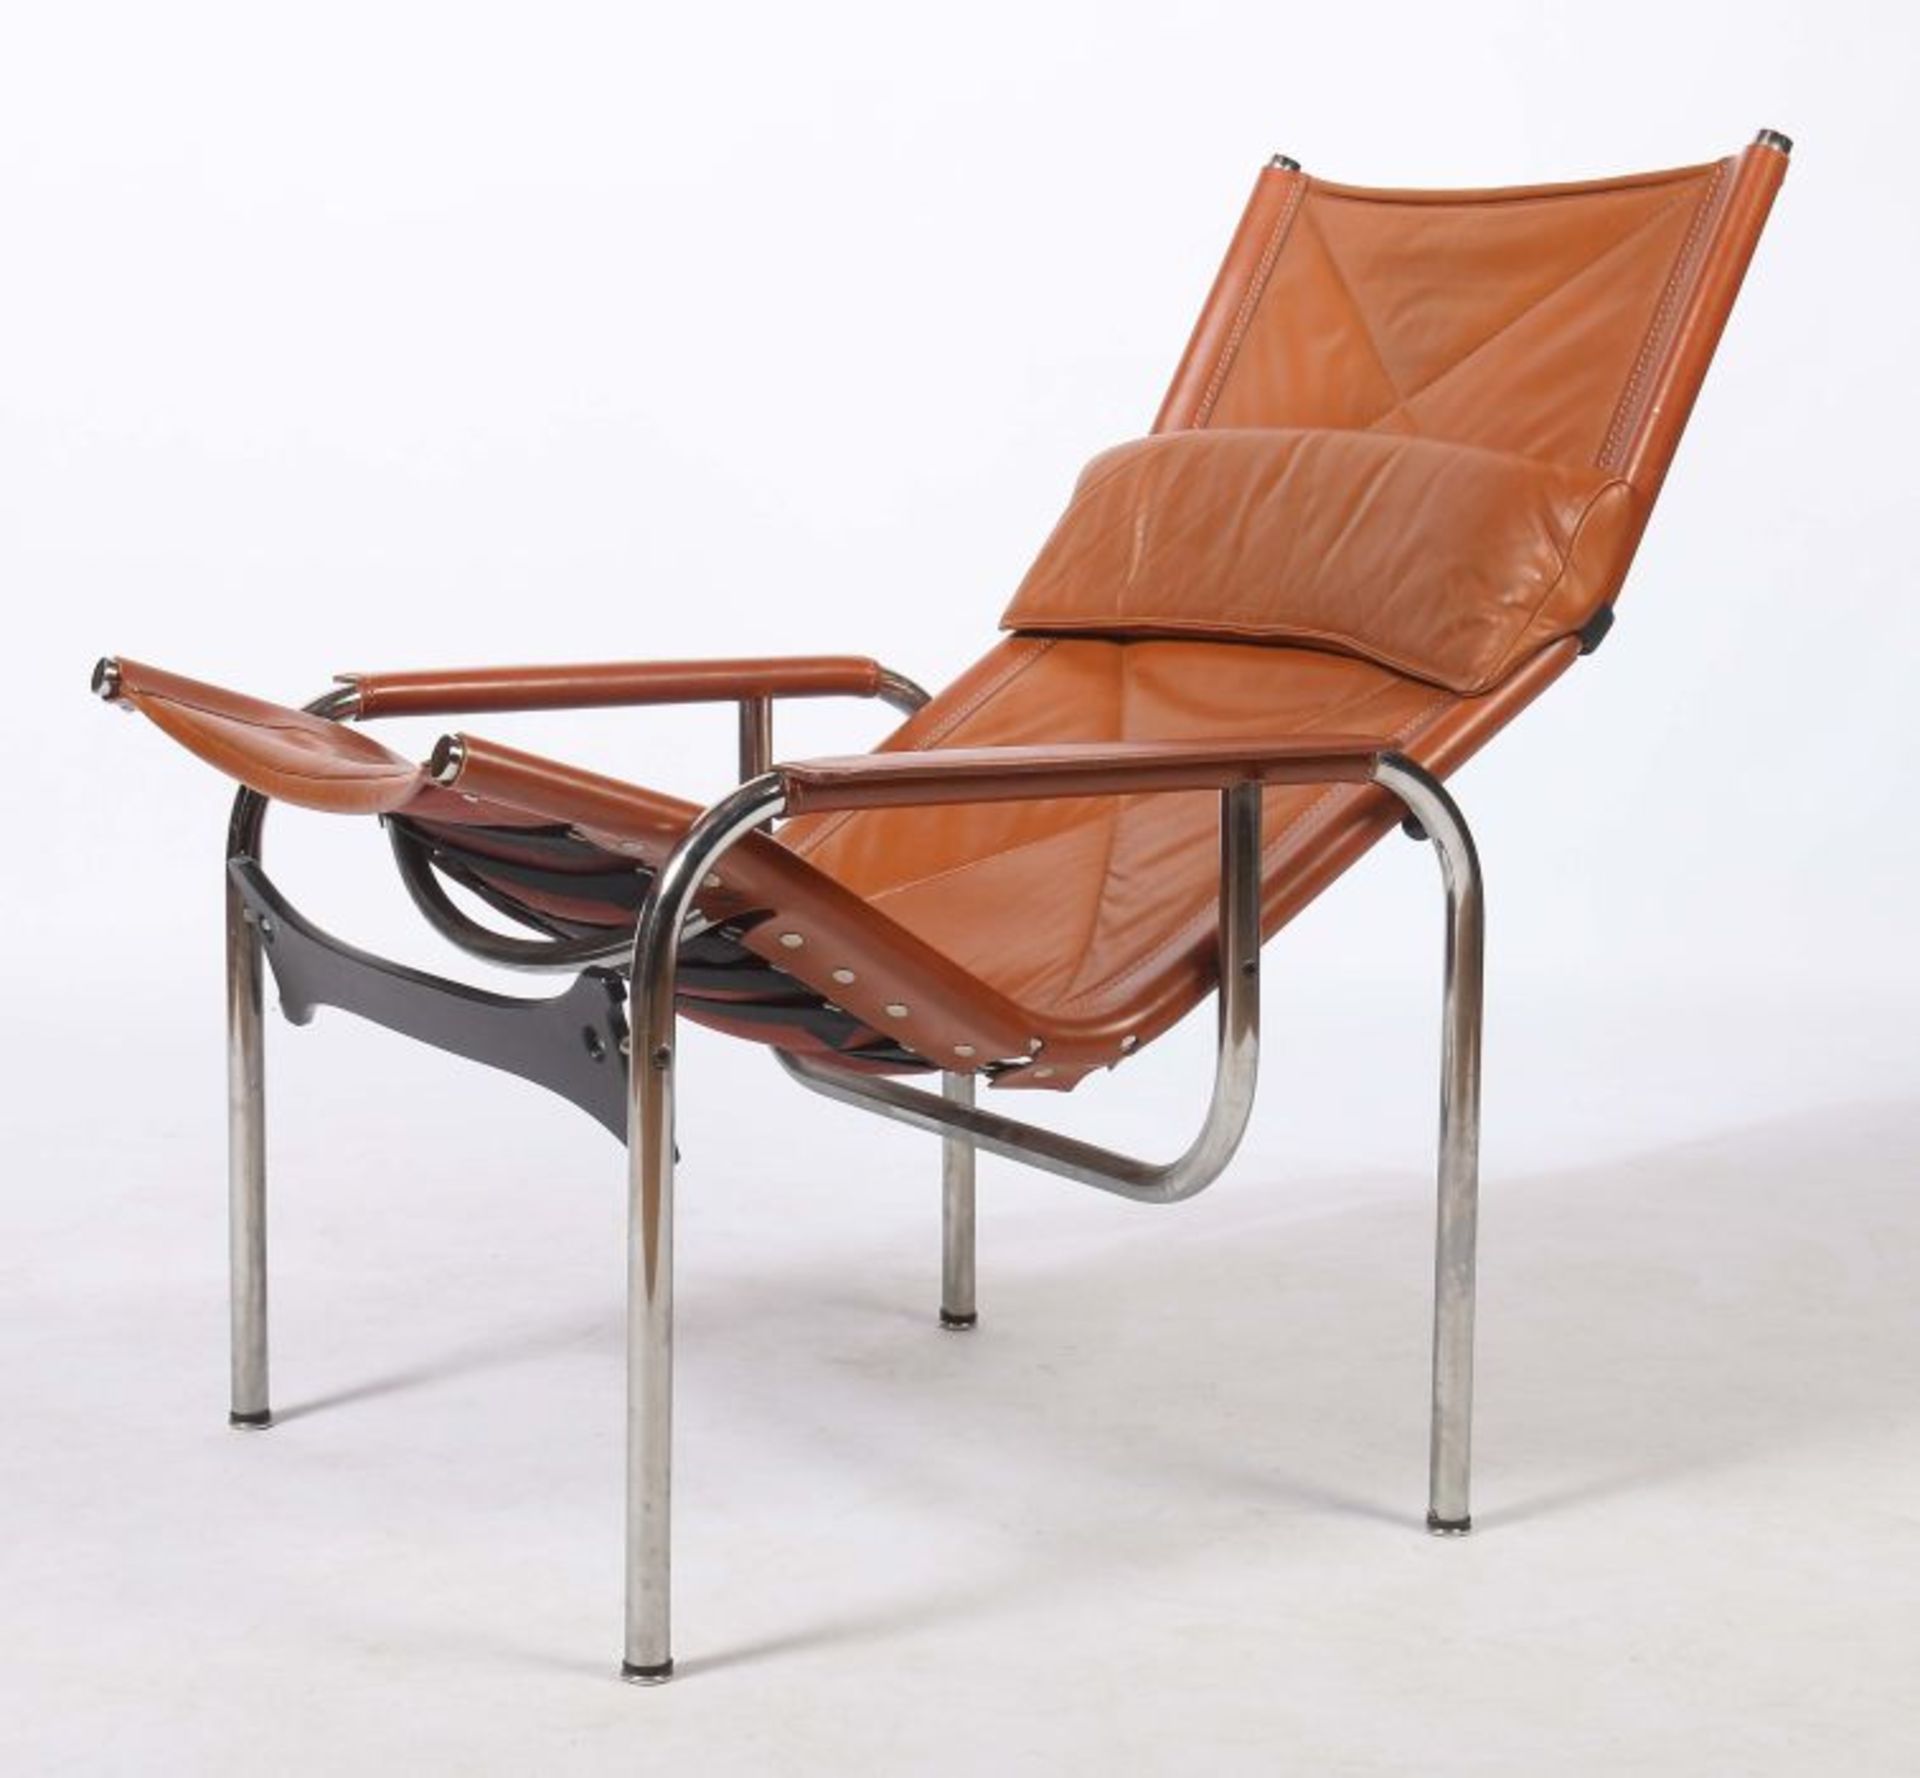 Eichenberger, Hansgeb. 1929, ist ein schweizer Innenarchitekt und Designer. Sessel mit Kippfunktion, - Bild 2 aus 2